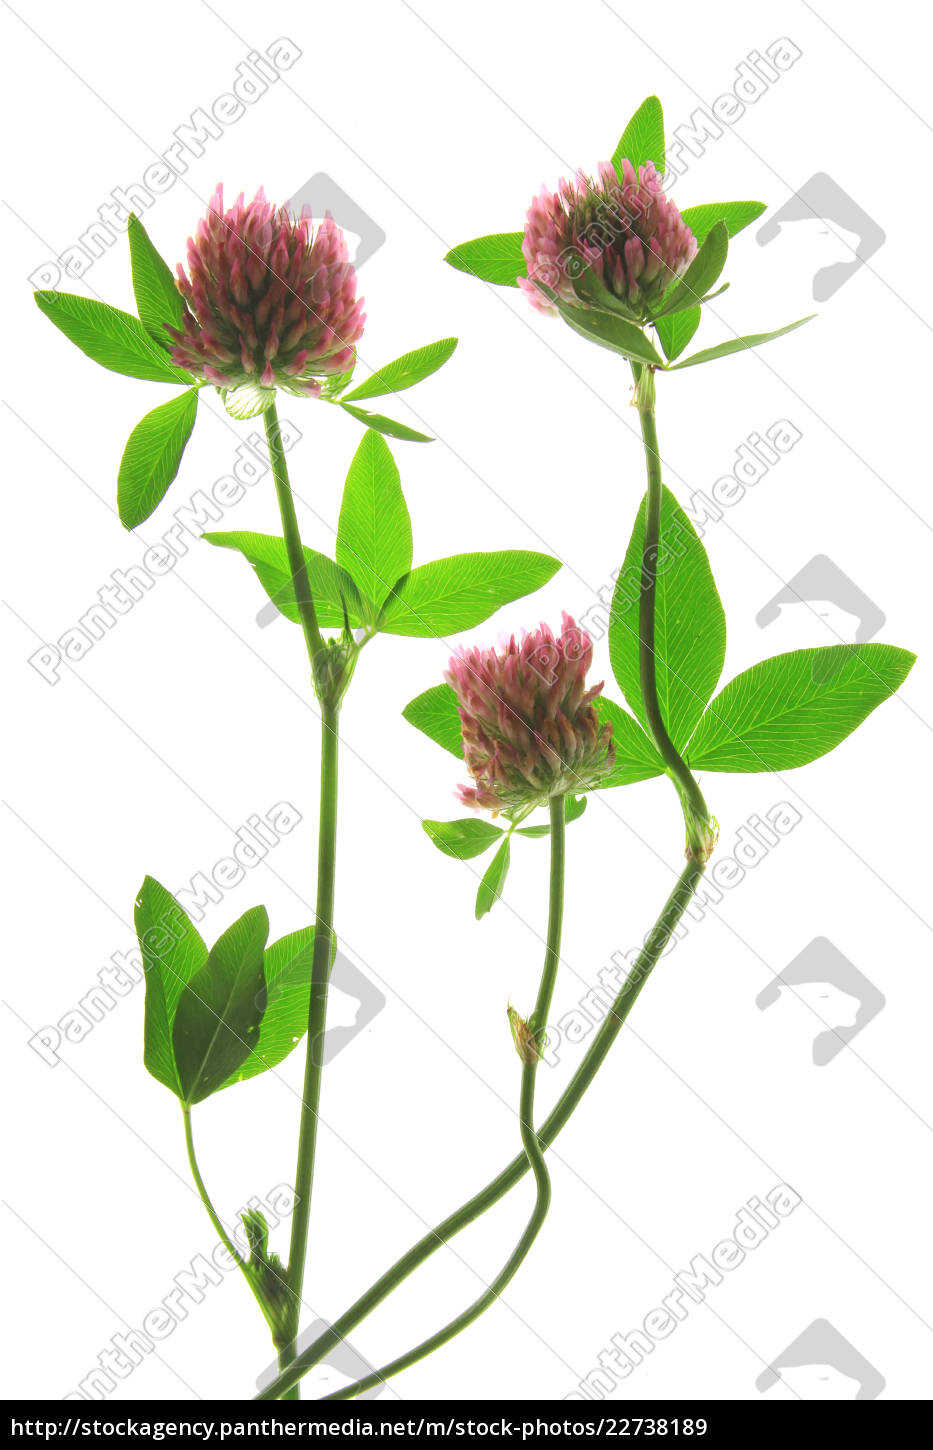 rødkløver trifolium pratense plante - Royalty Free Image #22738189 | PantherMedia Billedbureau